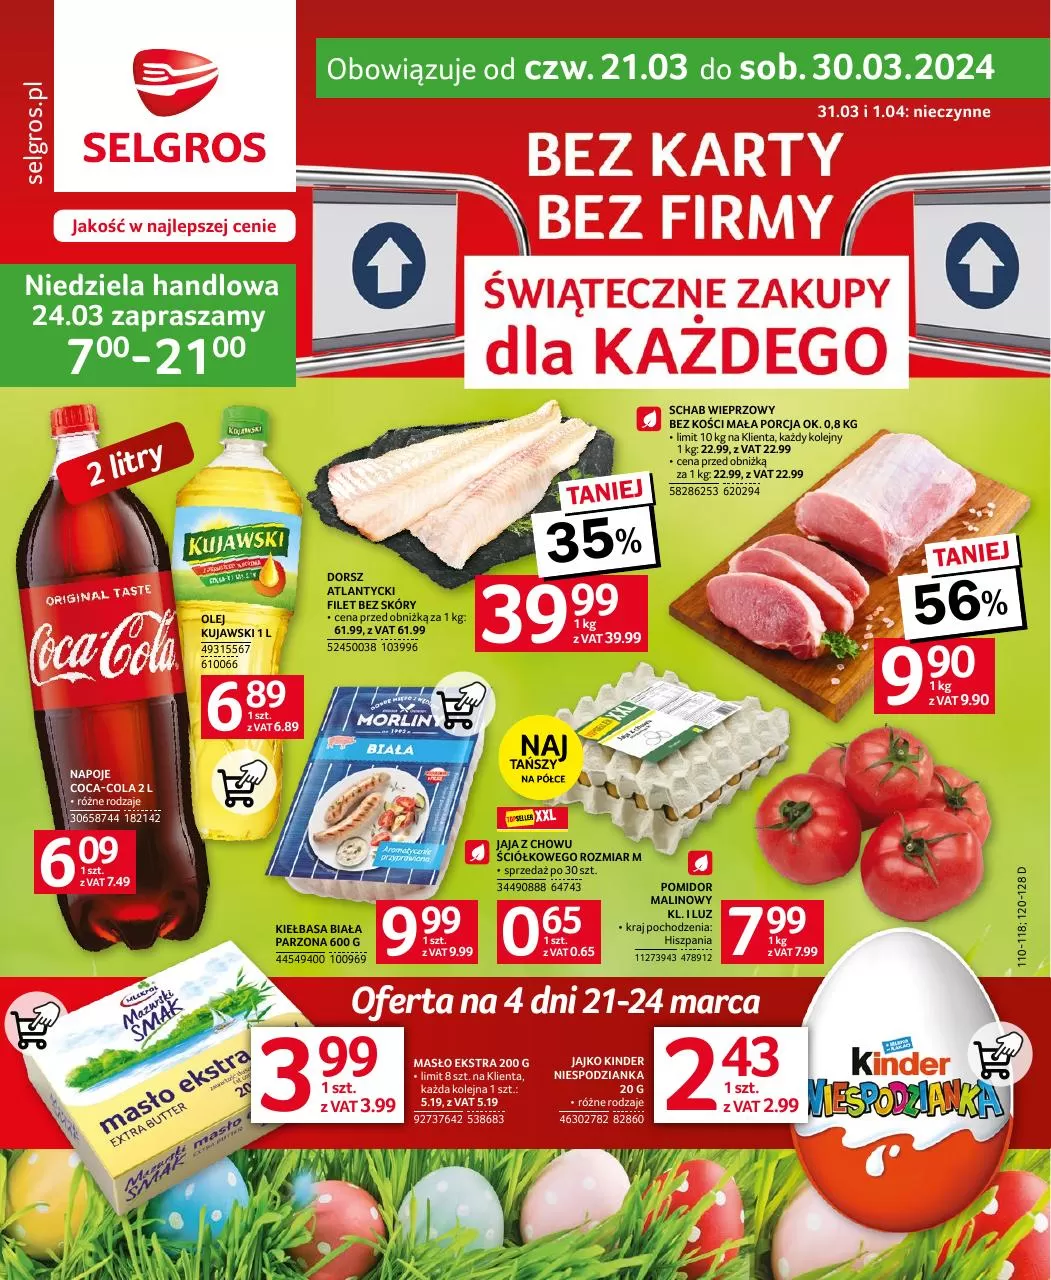 Ulotka gazetka promocyjna: Jakość w najlepszej cenie ze sklepu Selgros dostępna od 21.03 do 30.03